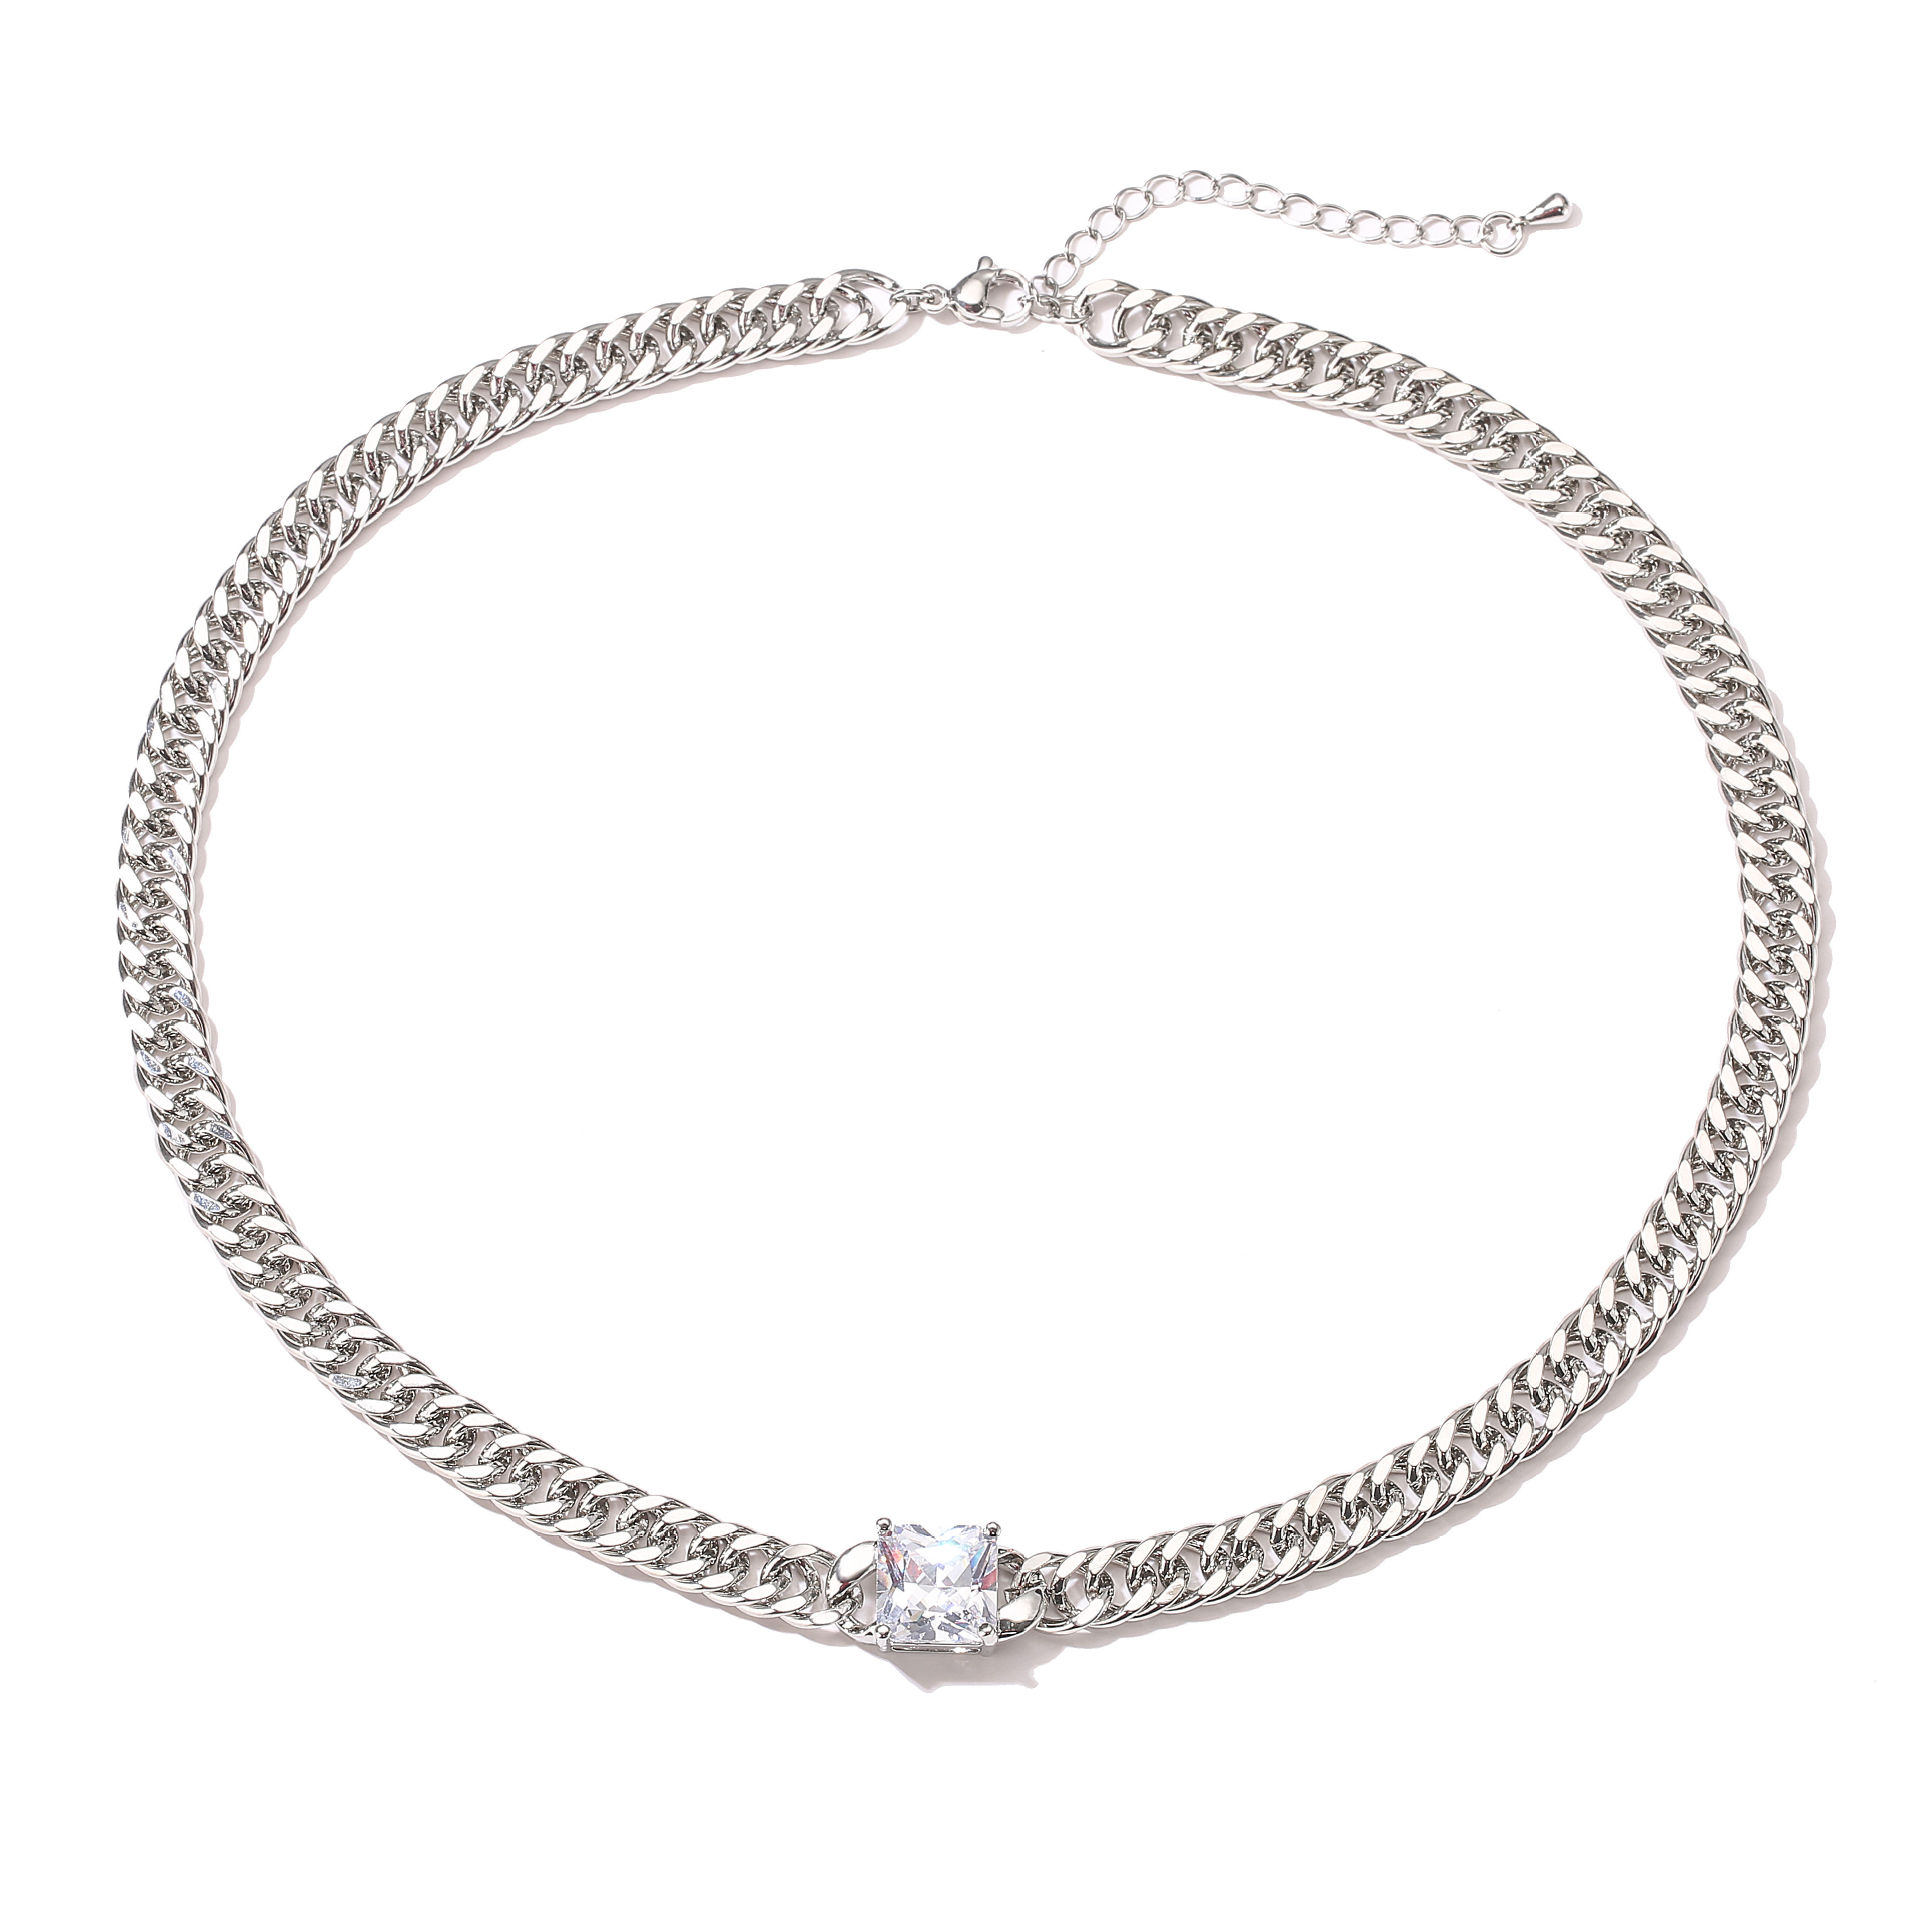 2:Platinum necklace